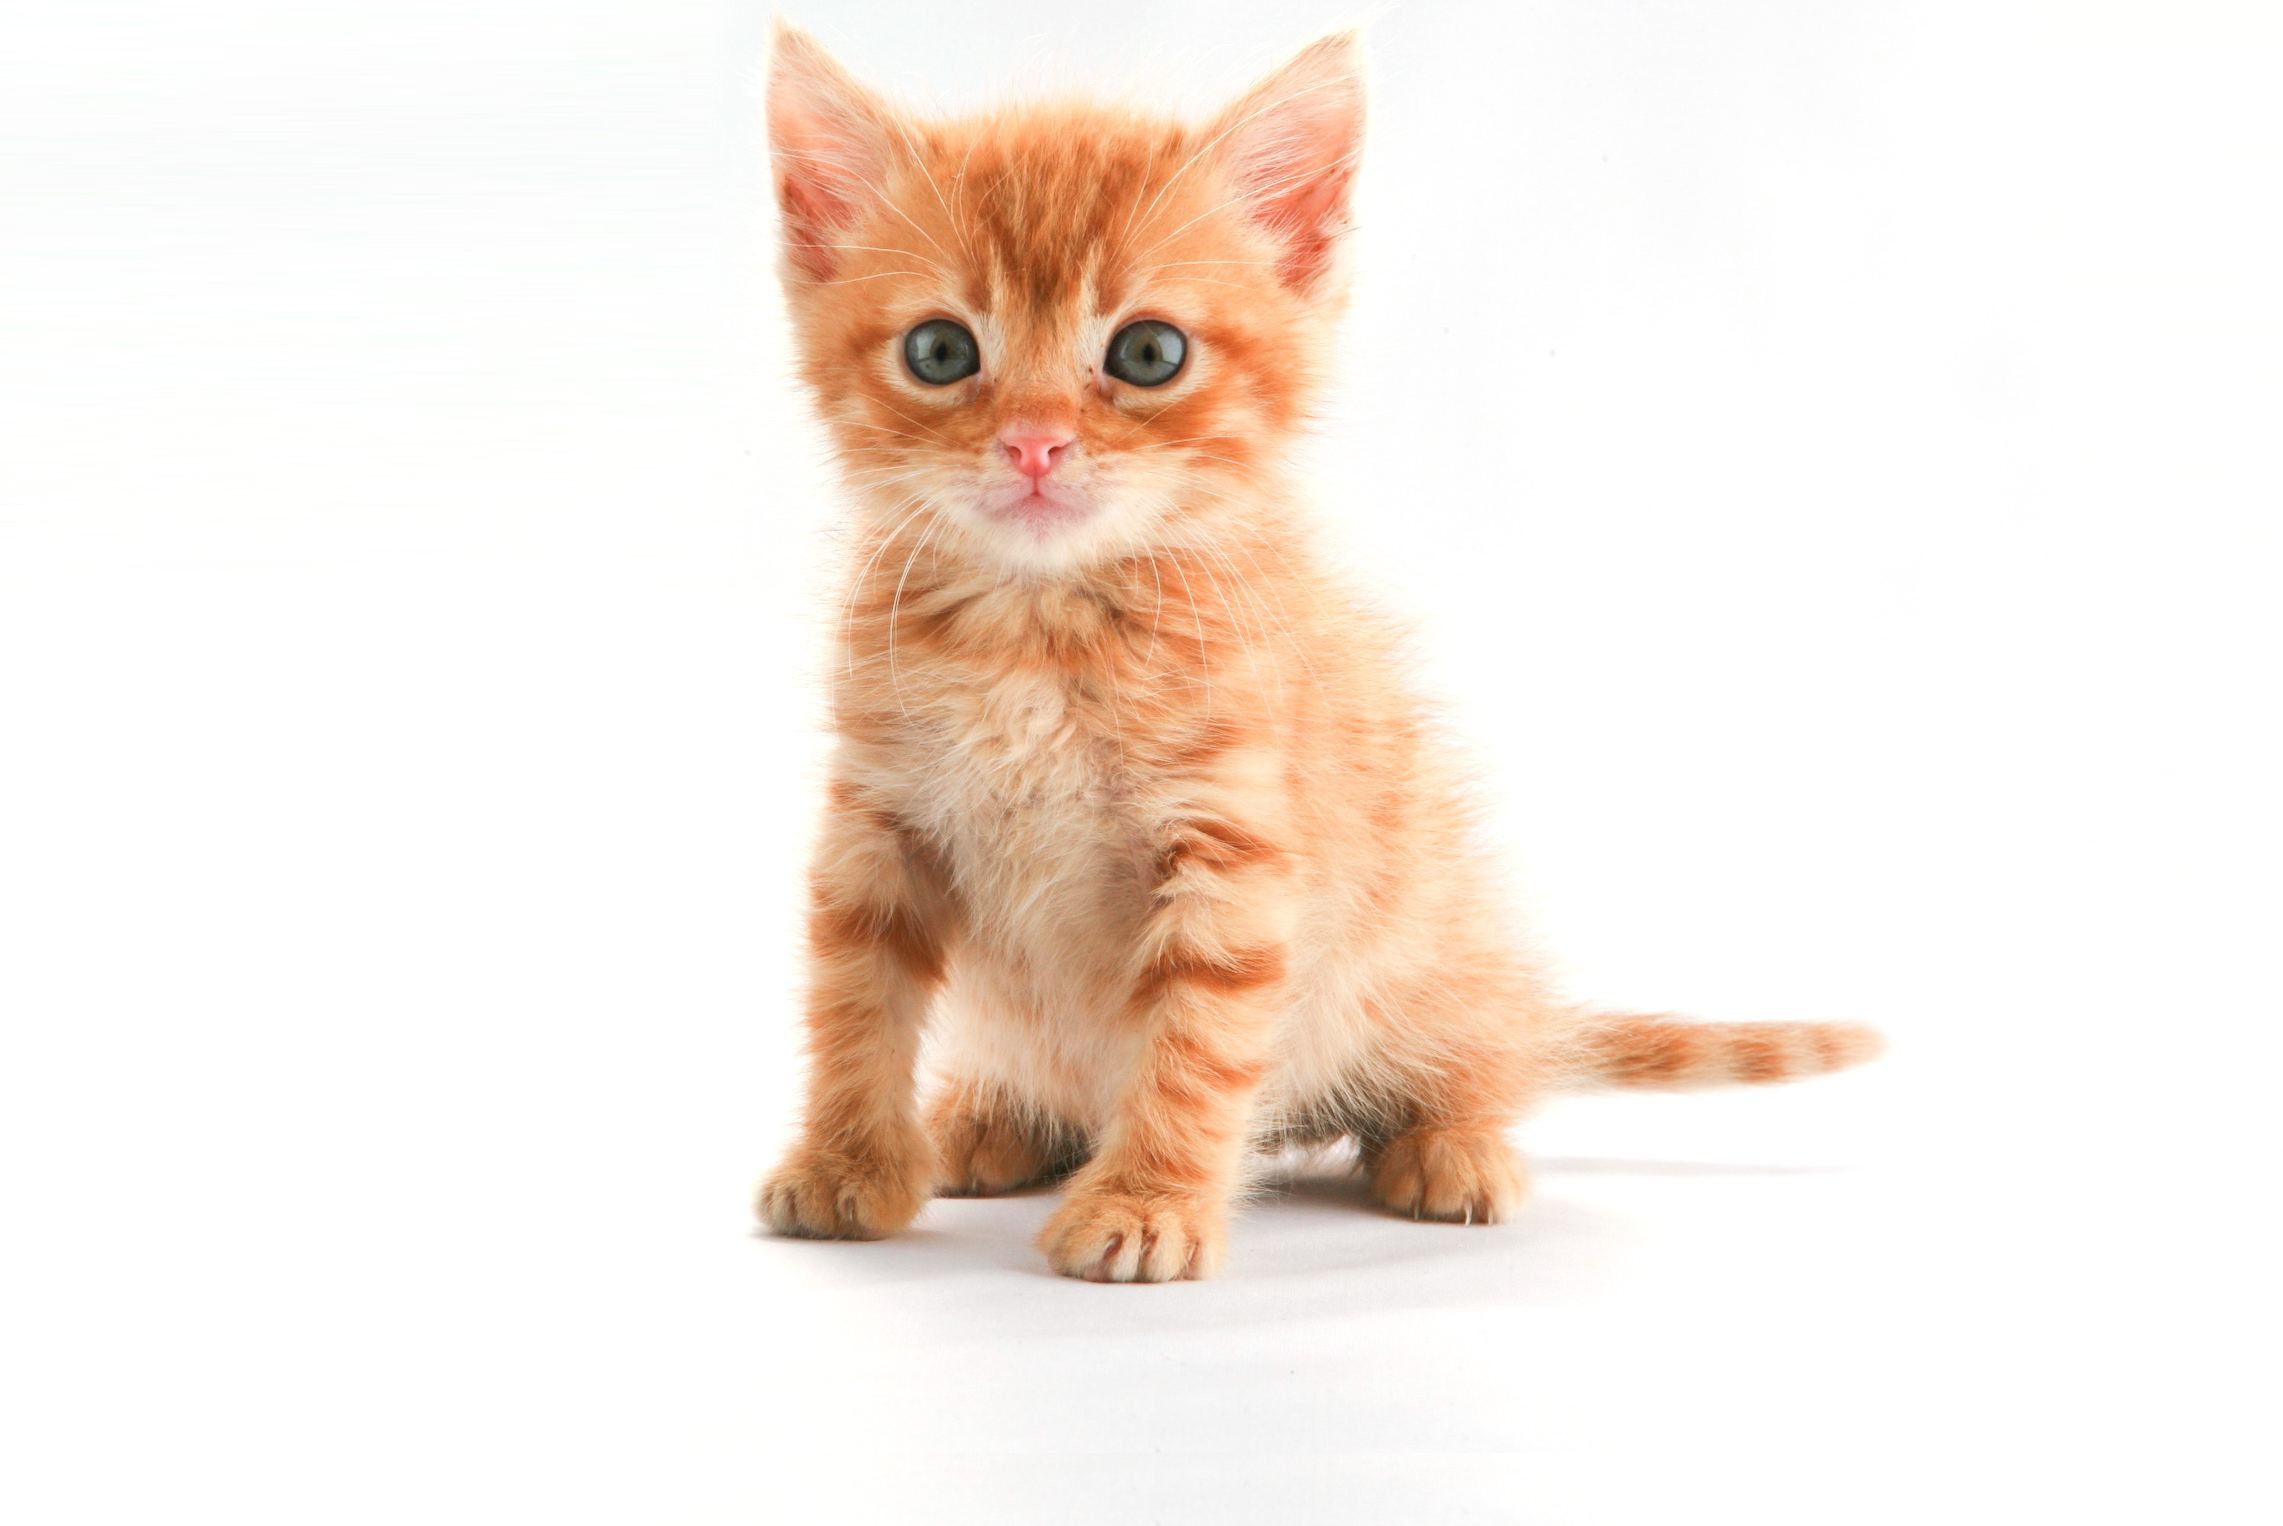 The Little Orange Kitten wallpaper – Animal Backgrounds